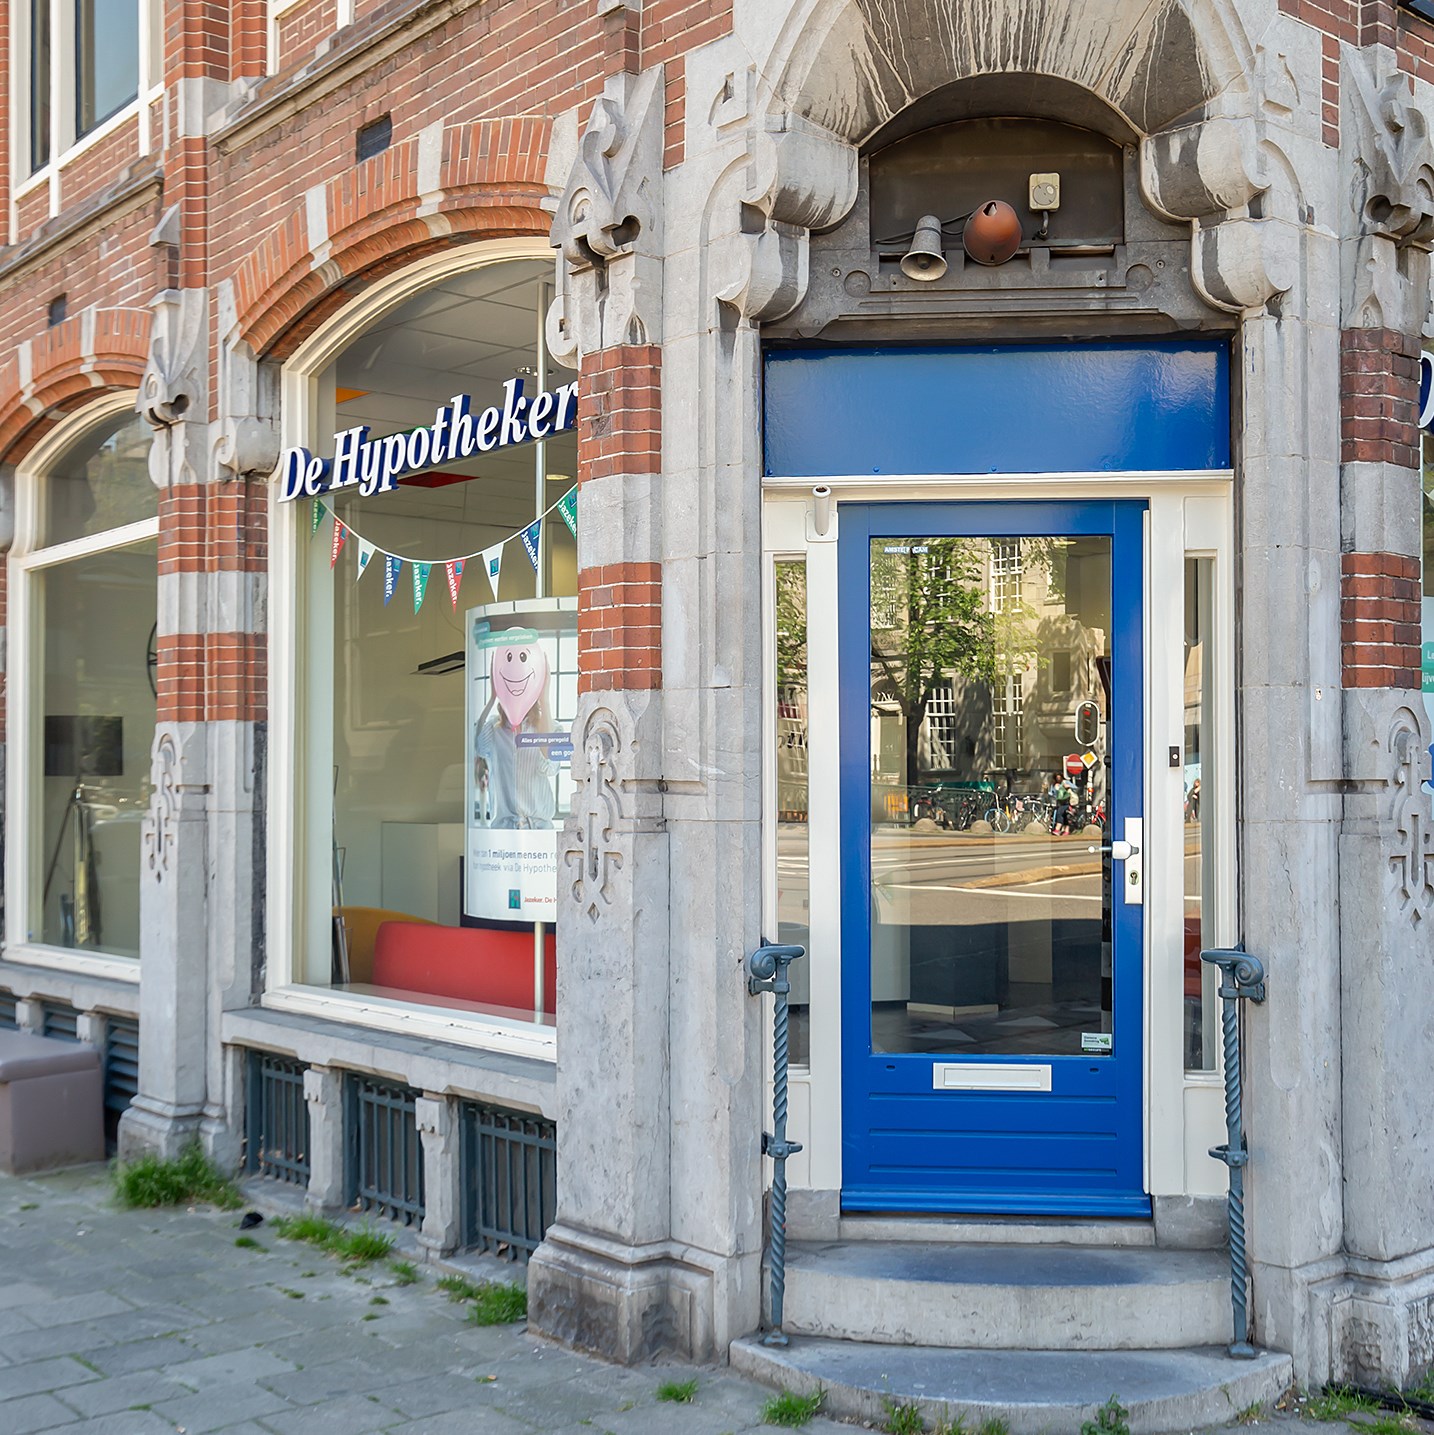 Foto van De Hypotheker Amsterdam